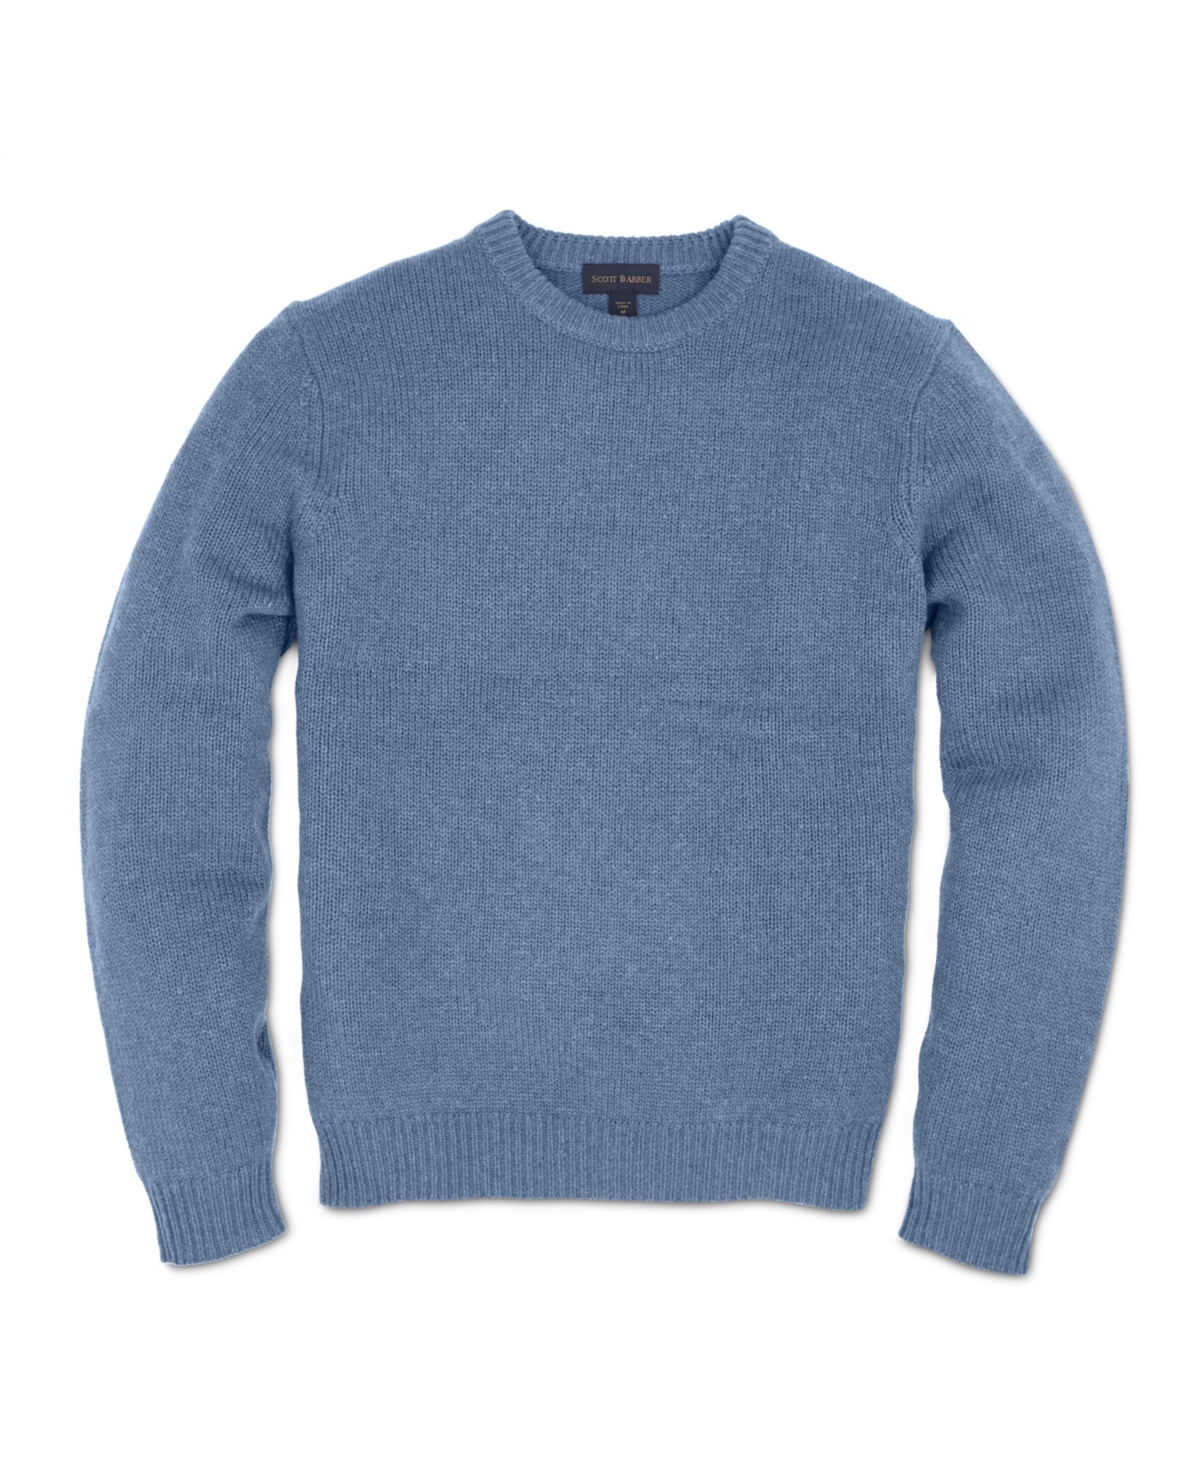 Men's Cashmere/Cotton Crew Sweaters - Dusk